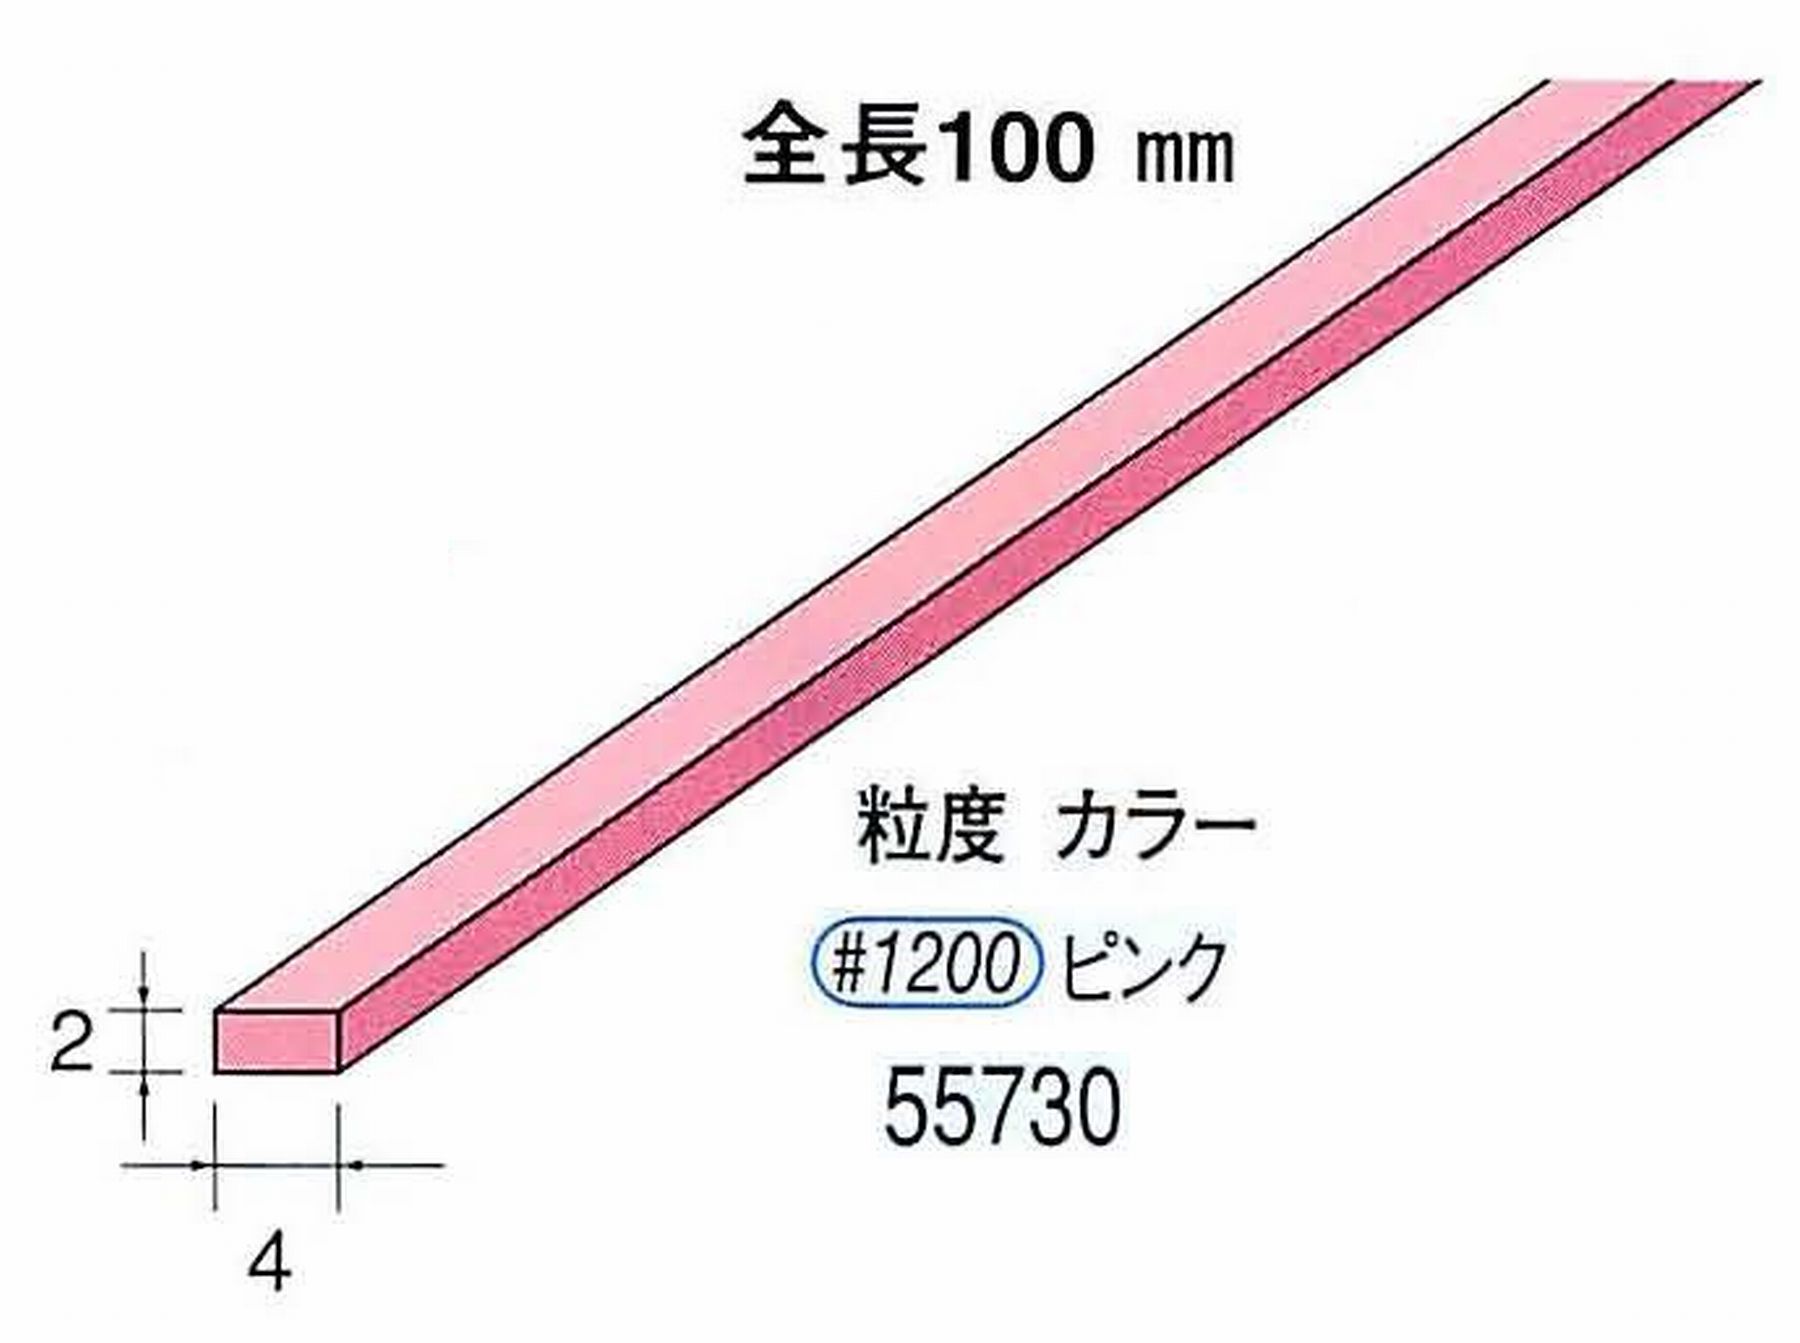 ナカニシ/NAKANISHI セラファイバー砥石 全長100mm ピンク 55730